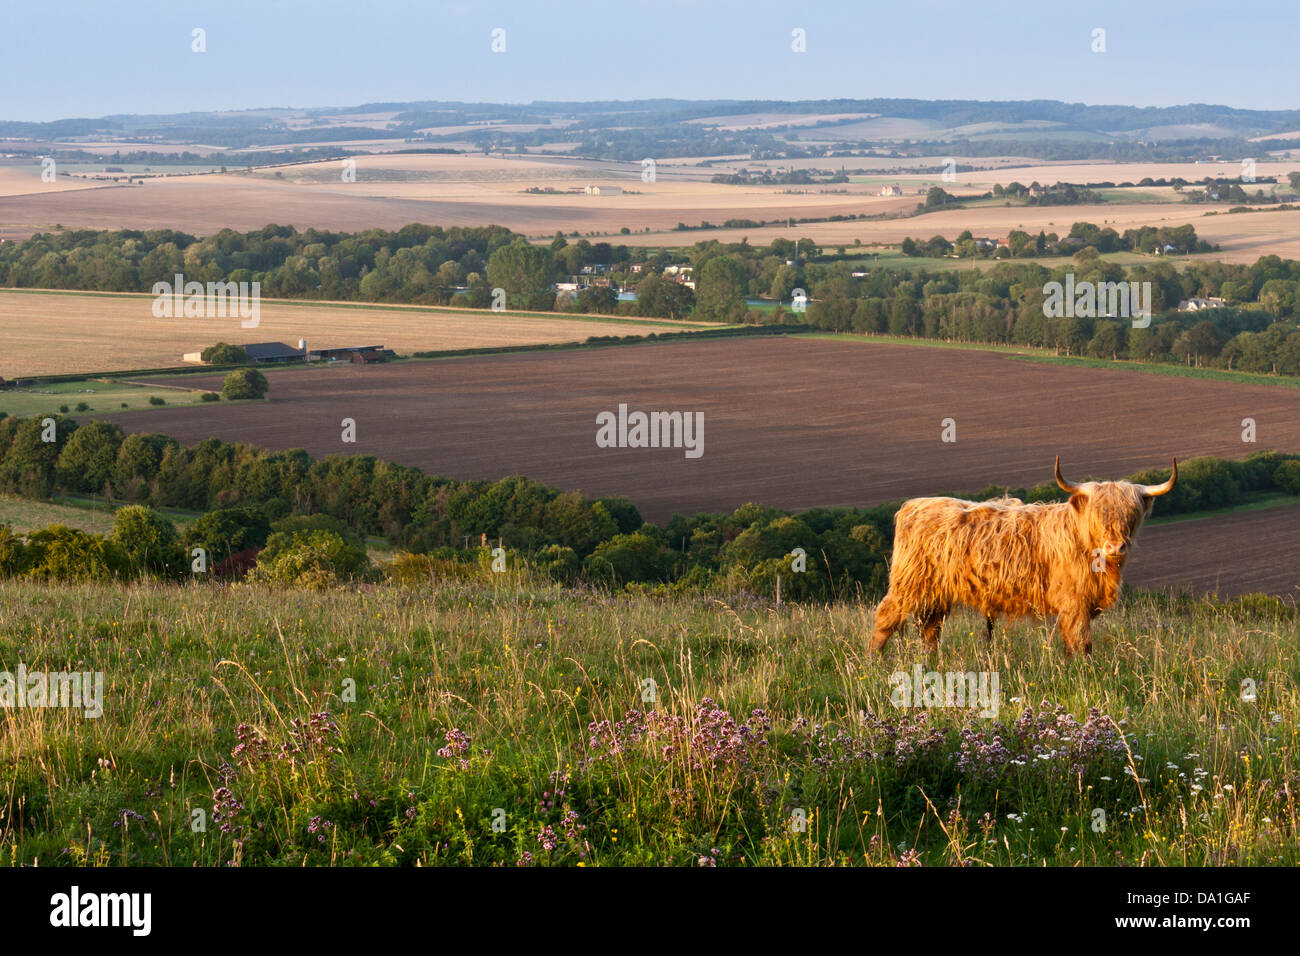 Ein Highland Cattle Stier in einem Feld auf ein Chiltern Hügel in Berkshire, Süd-England, GB, UK. Stockfoto